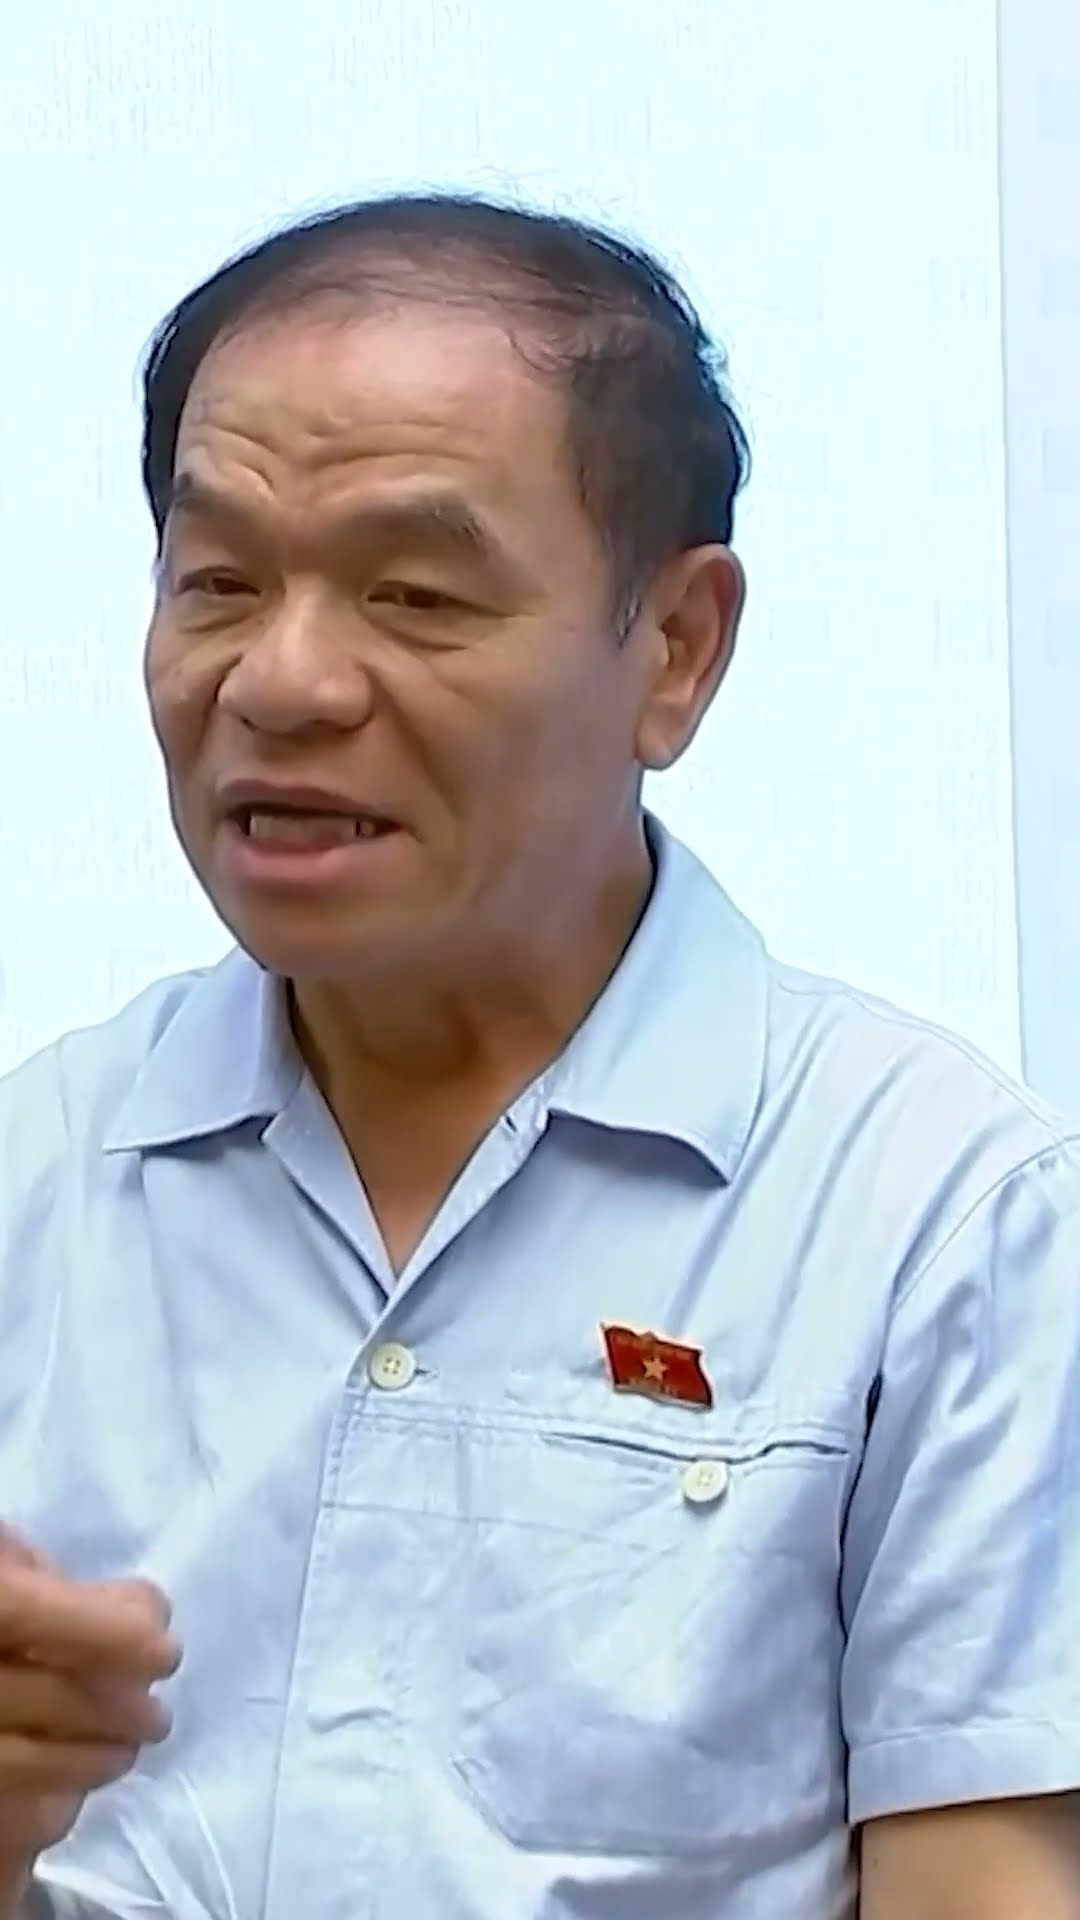 ĐBQH Lê Thanh Vân: "Ông chủ tịch này đồng ý, chủ tịch khác lên ngứa mắt lại thu hồi dự án"